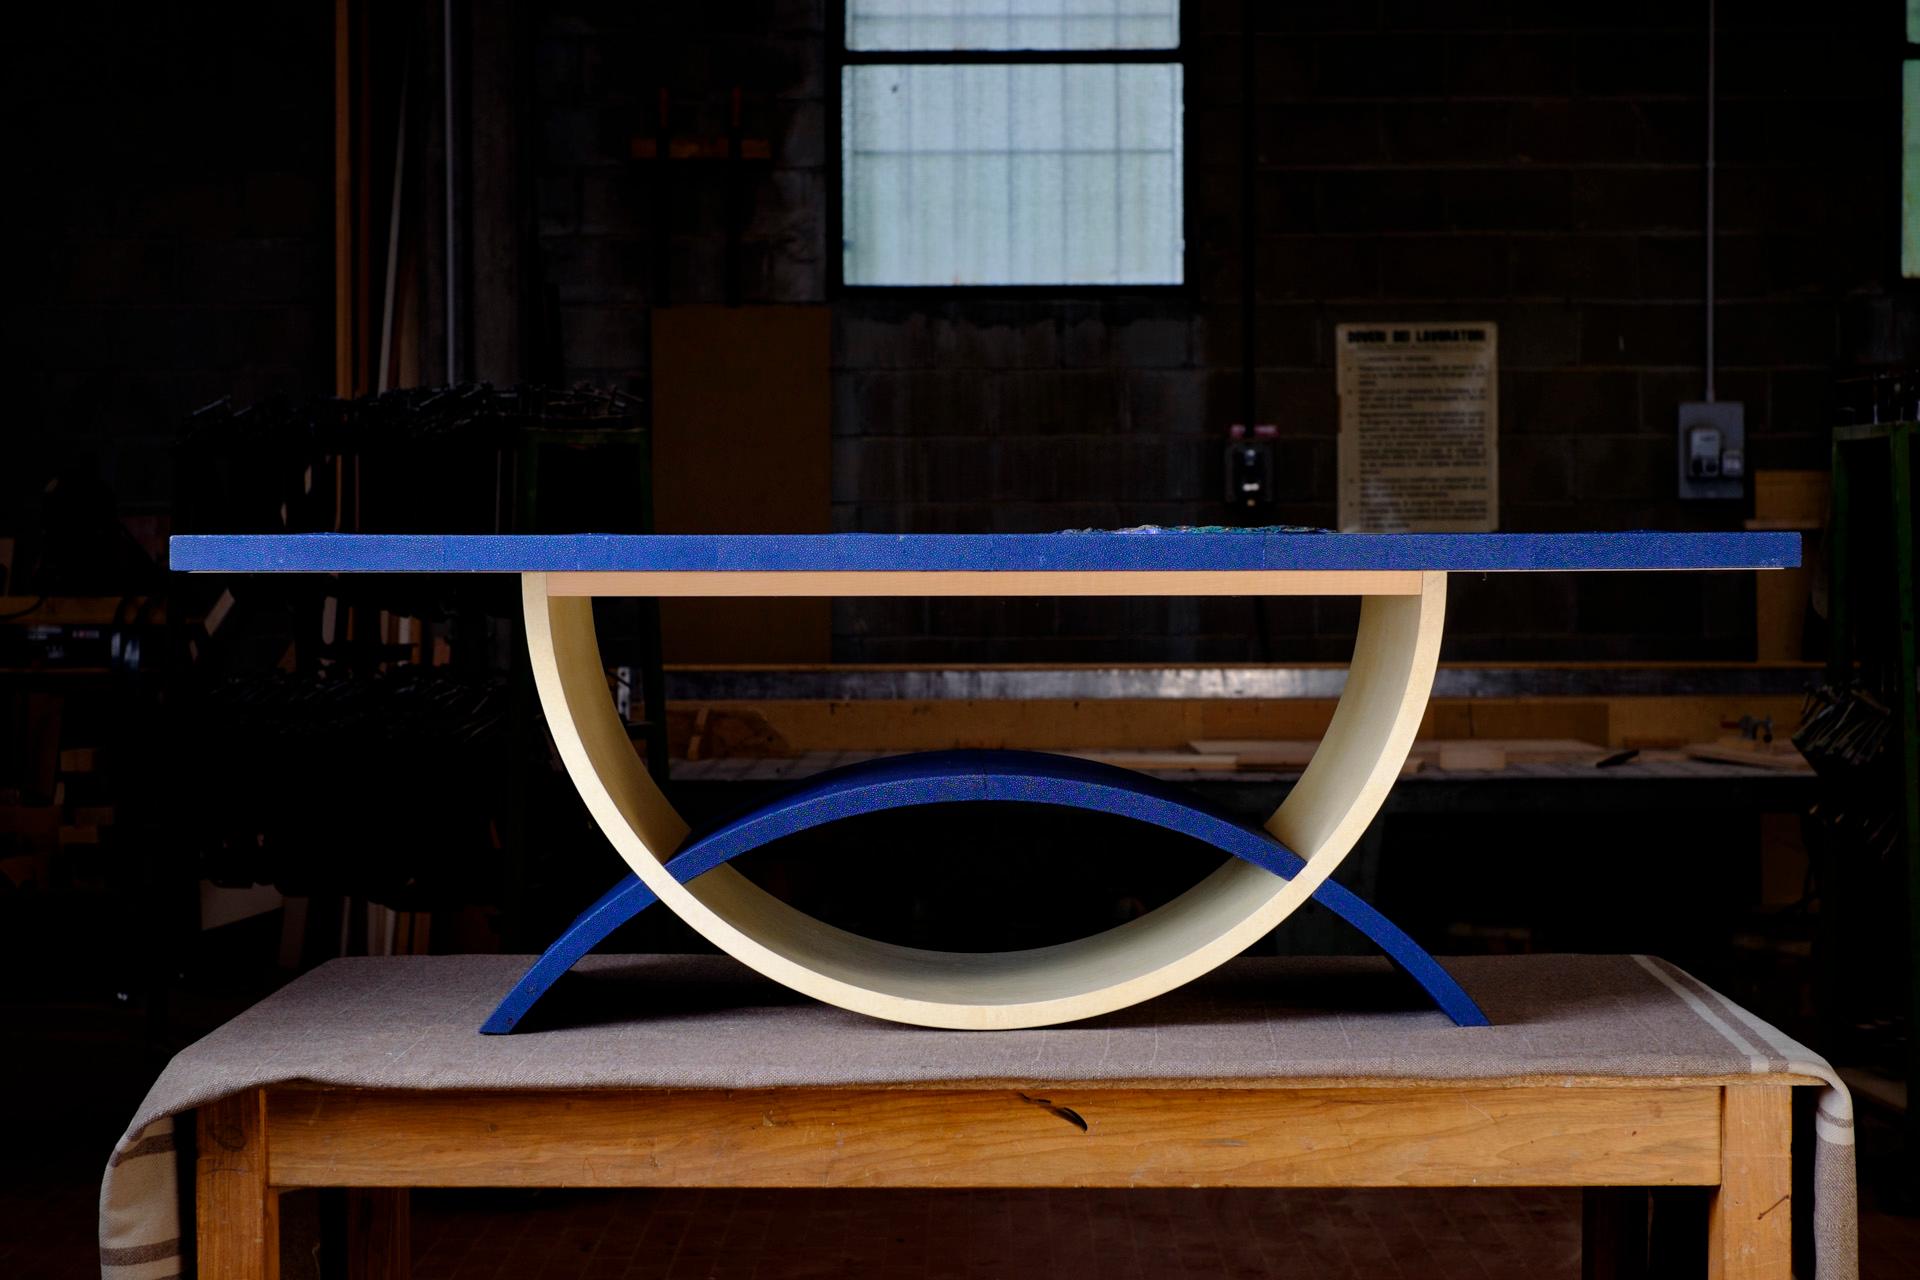 Linee geometriche in perfetto equilibrio disegnano la forma di Blue Moon.
Questo tavolino da salotto è fatto con materiali pregiati lavorati con arte sapiente e abbinati in modo originale. E' un pezzo unico realizzato a mano con le tecniche